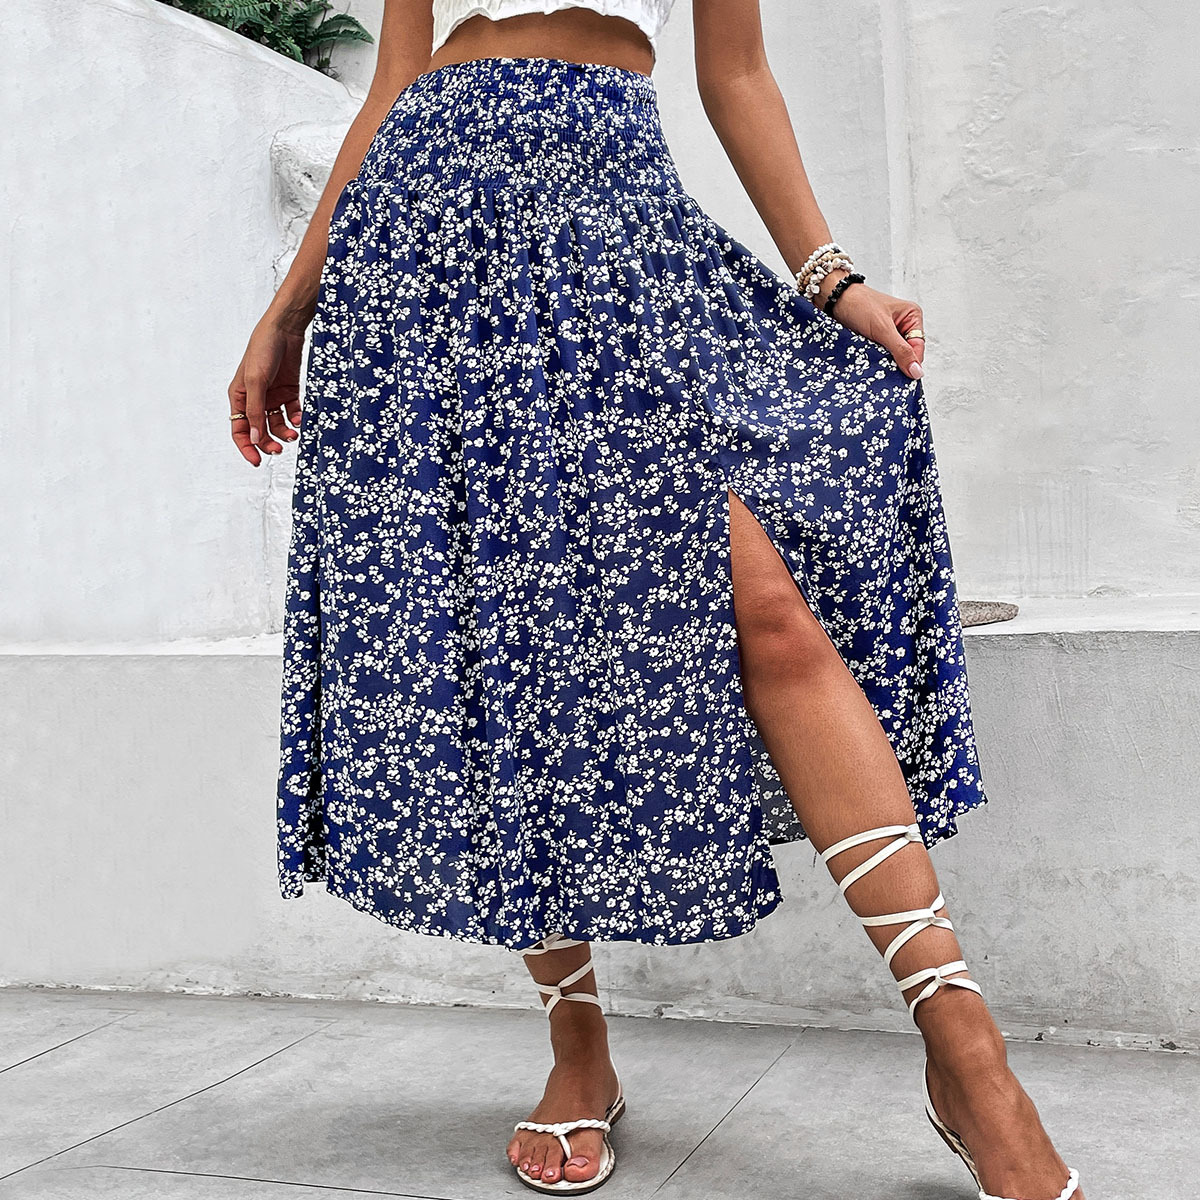 European style long summer printing blue skirt for women